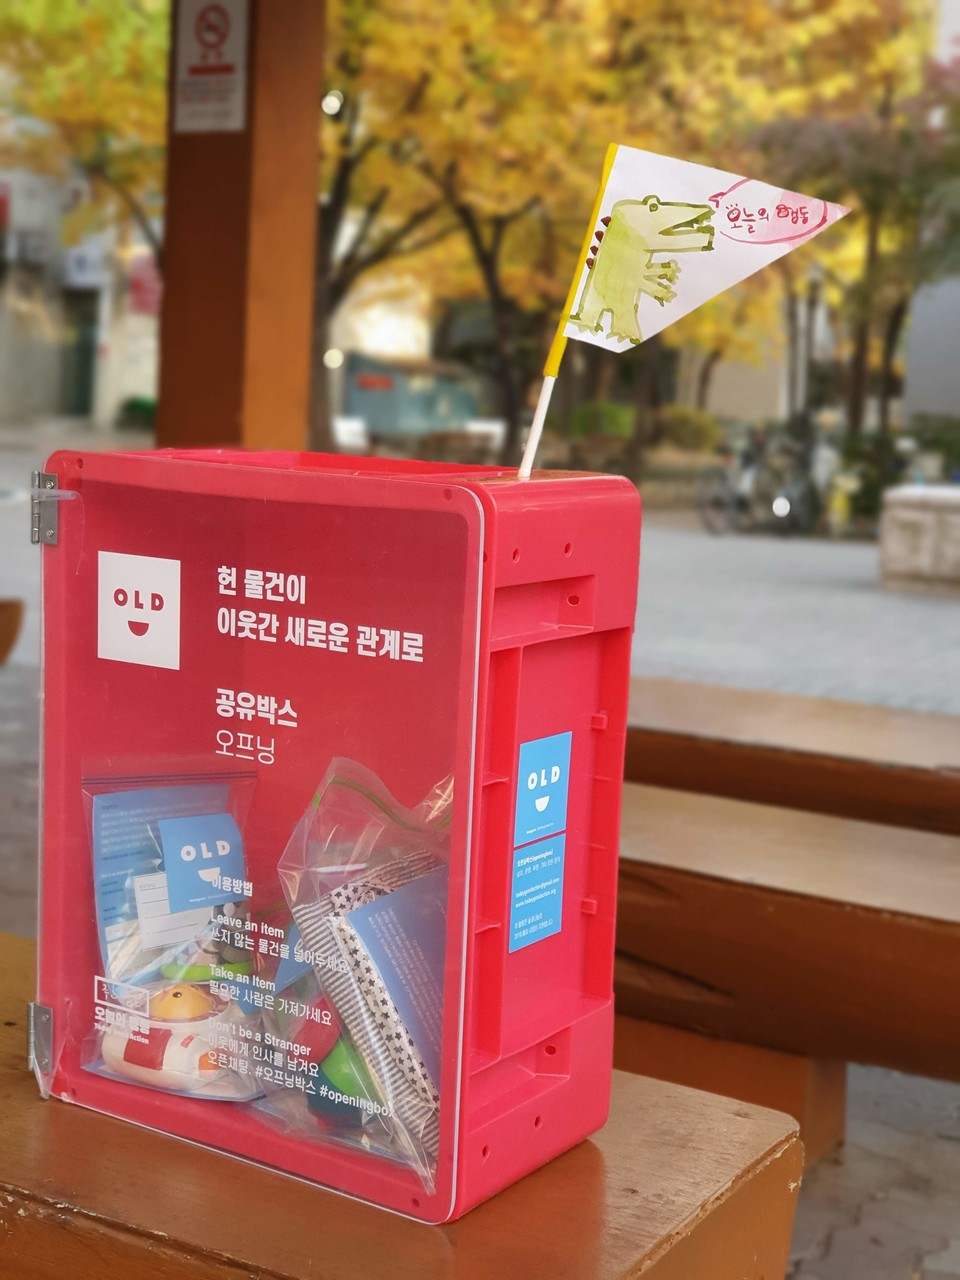 오늘의행동사회적협동조합은 서울혁신파크를 비롯해 20여군데에 오프닝박스를 설치했다.  정 이사장은 "오프닝박스는 물건을 매개로 사람들간에 느슨한 접촉과 연결이 만들어졌으면 좋겠다는 뜻에서 만든 것"이라고 설명했다. 